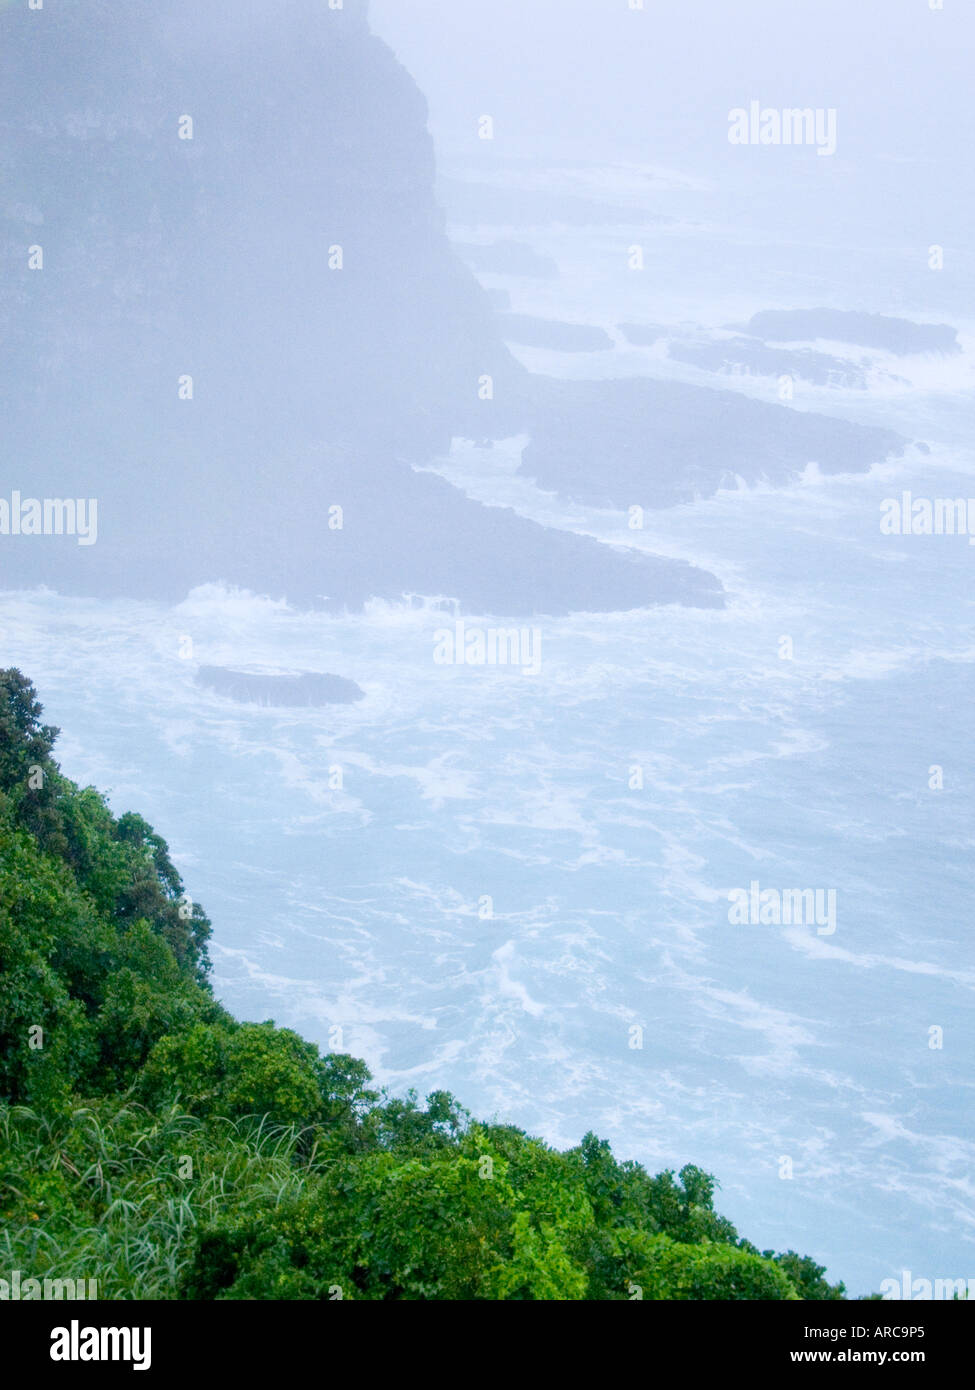 Giappone costa rocciosa isola hirado e la nebbia sul mare Foto Stock